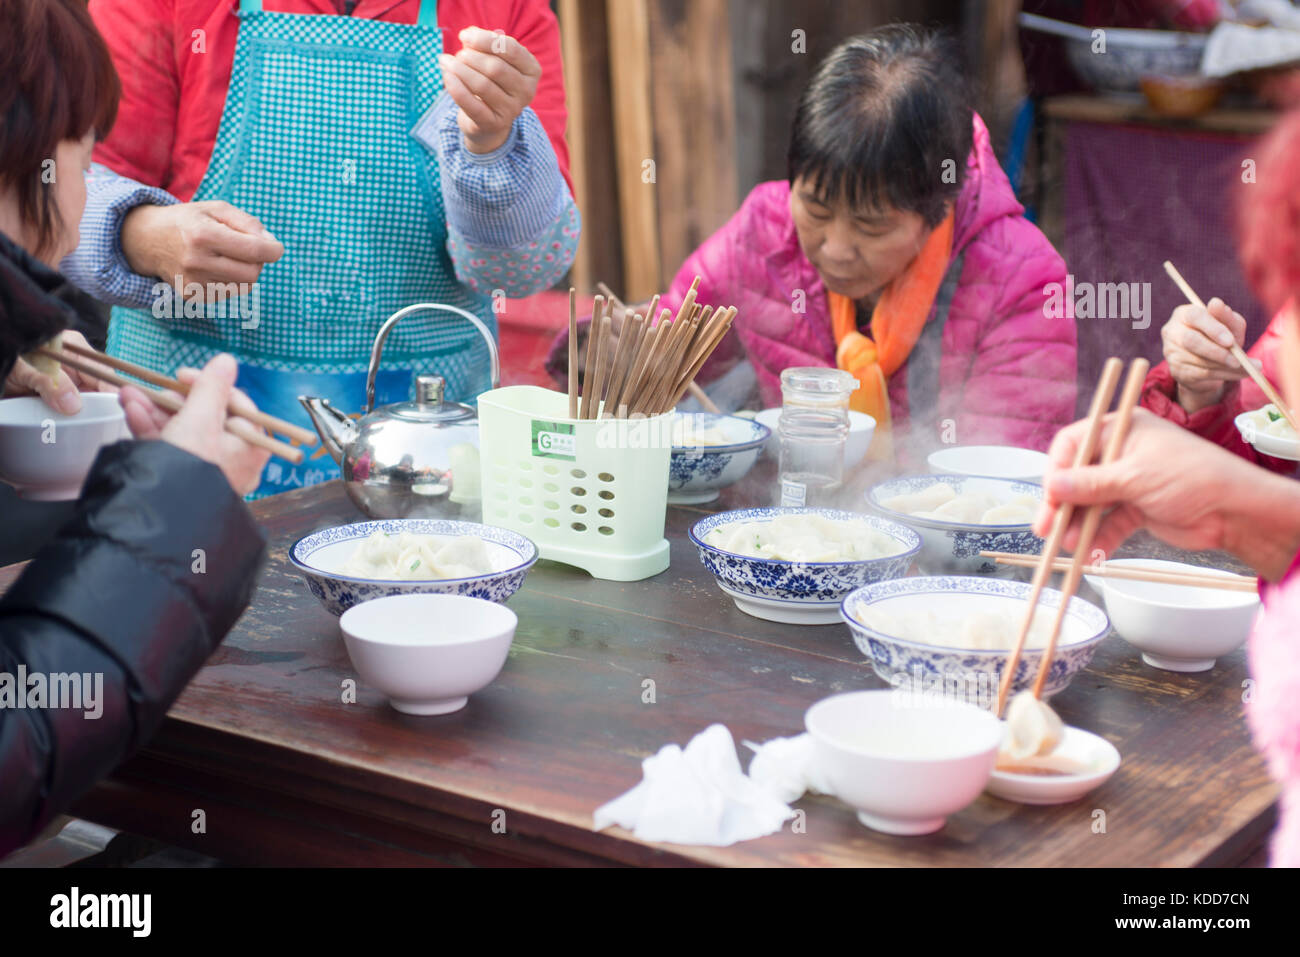 Les gens mangent des boulettes dans un restaurant.2016 Chine Banque D'Images